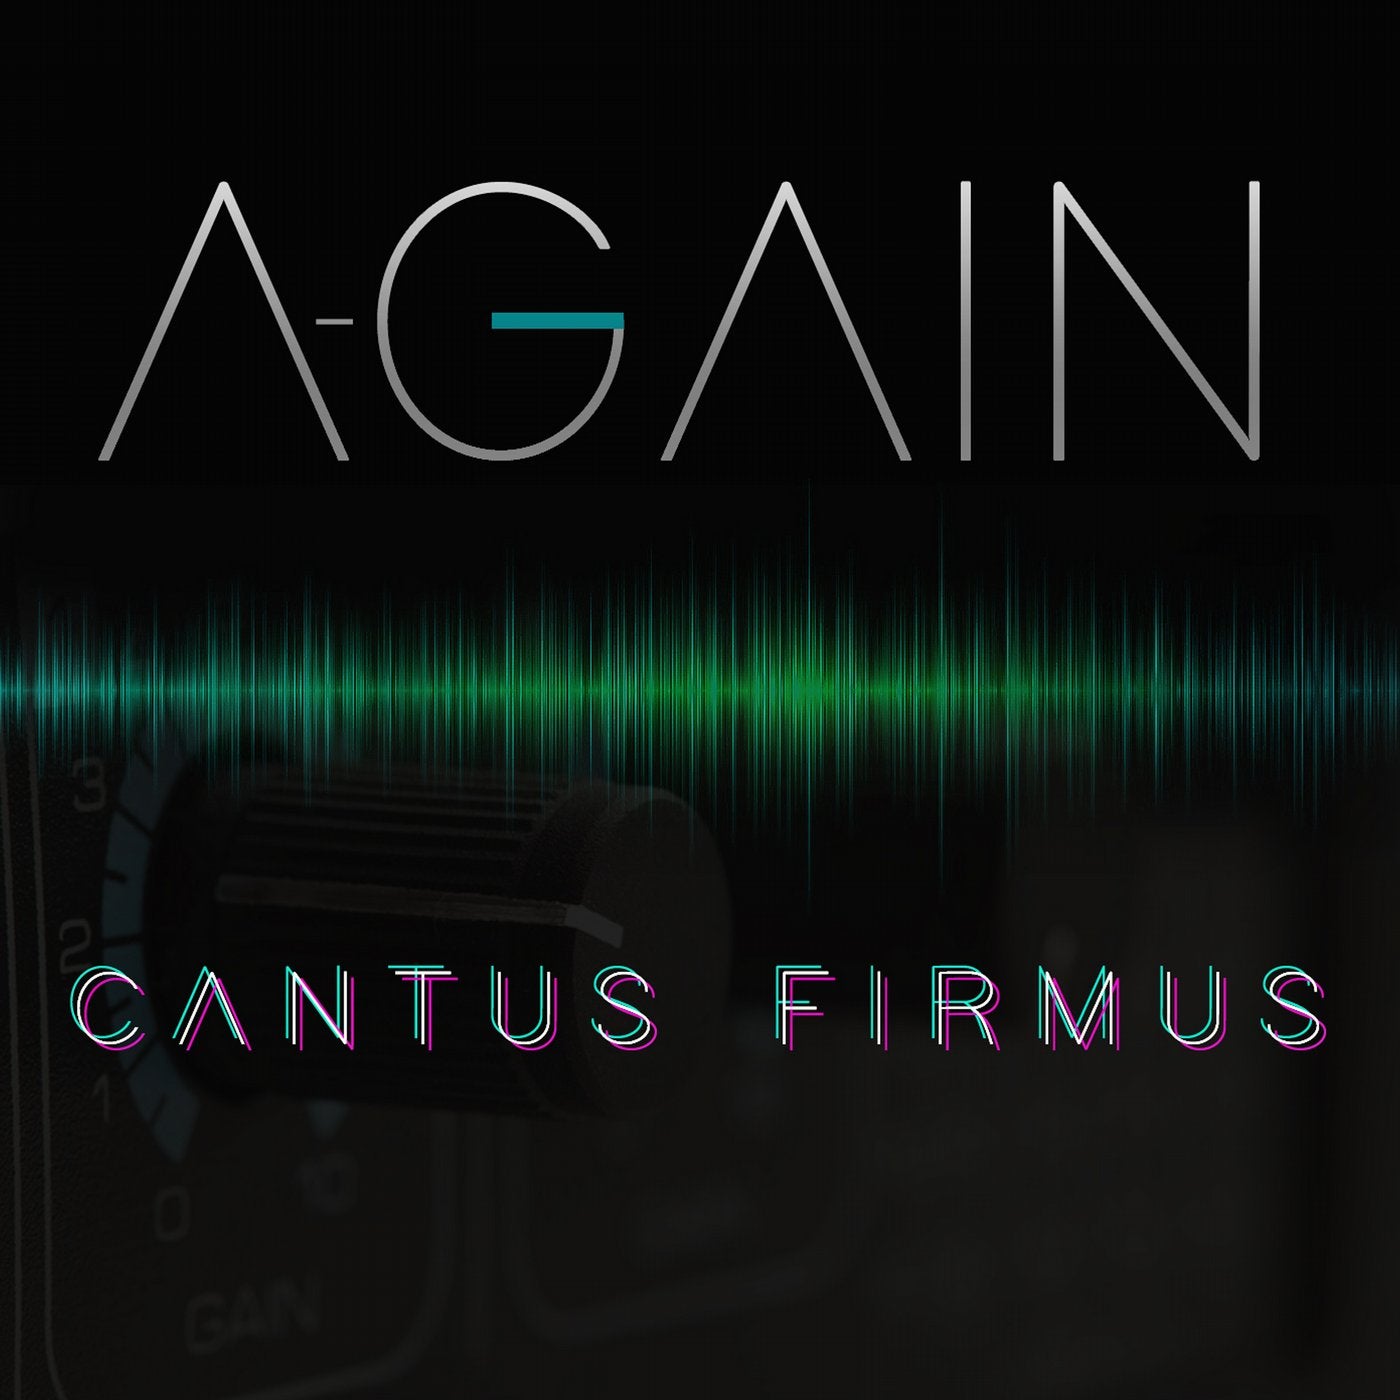 Cantus Firmus